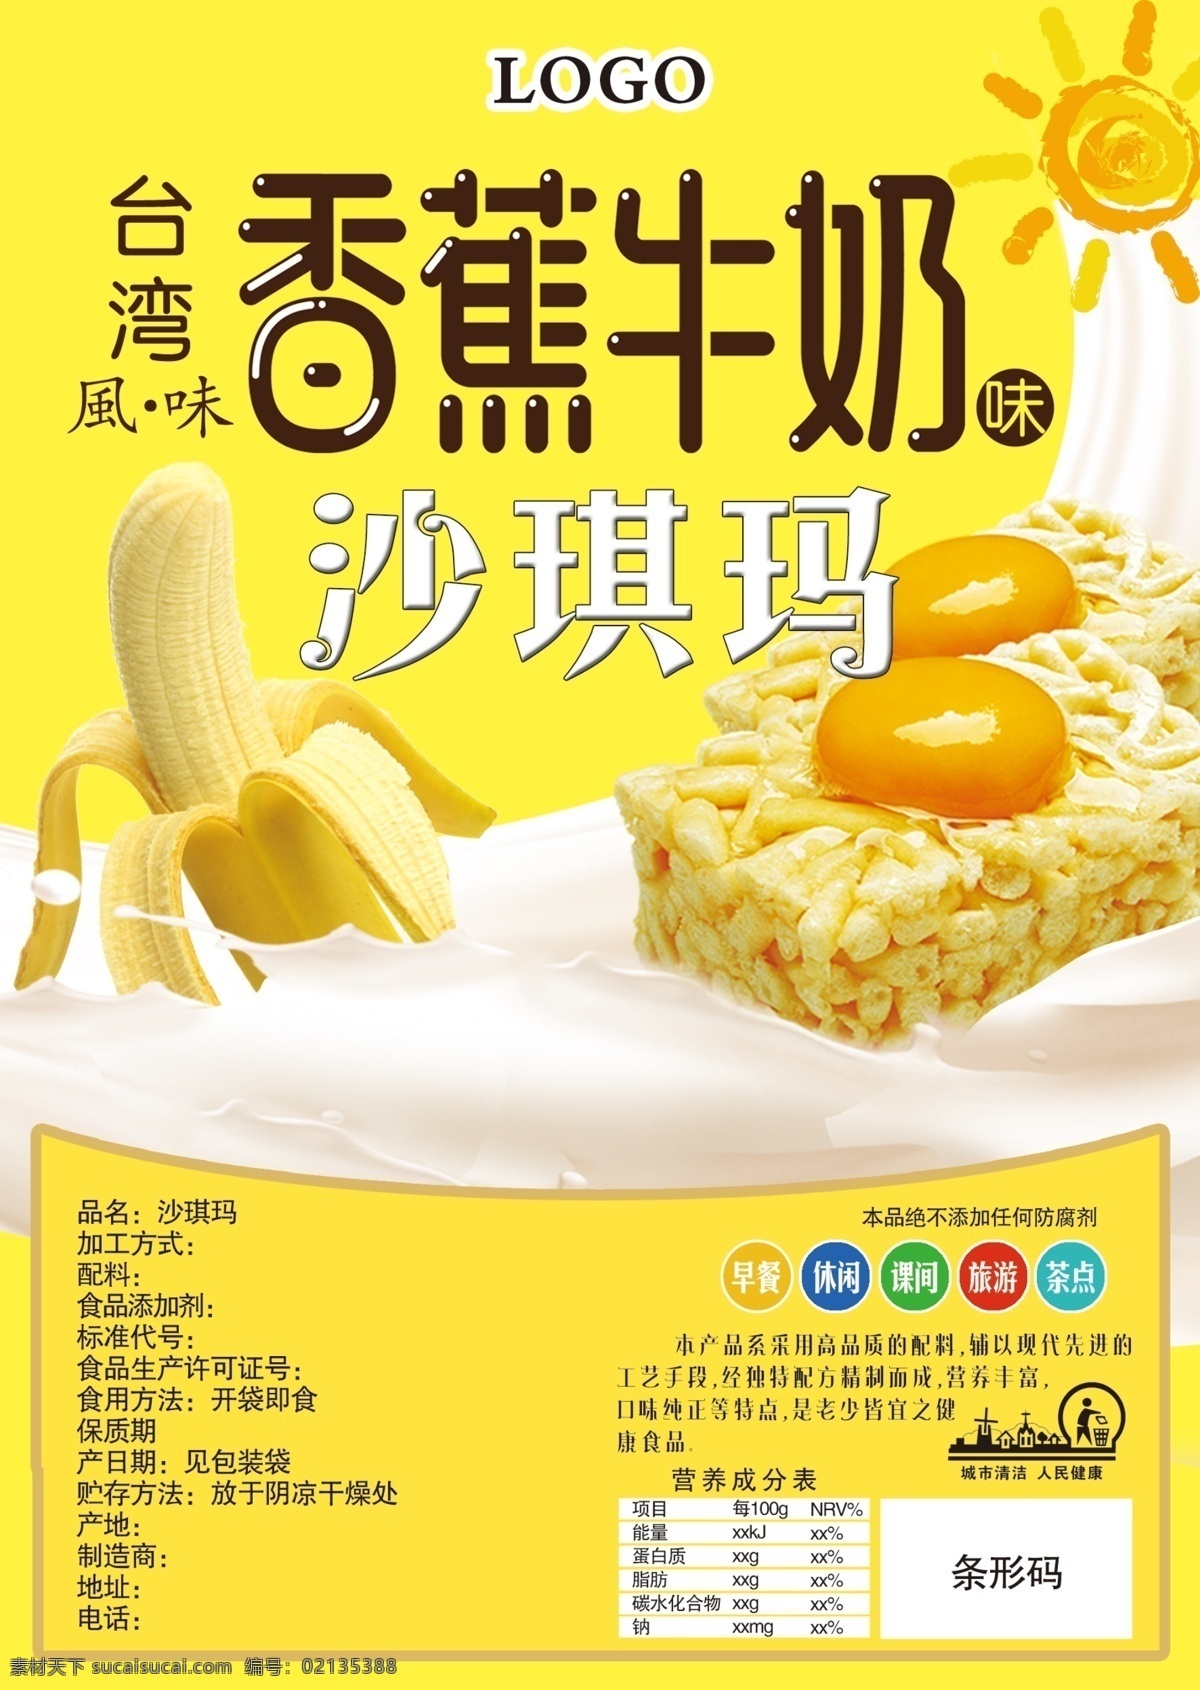 台湾 风味 香蕉 牛奶 沙琪玛 台湾风味 香蕉牛奶 零食 食物 招贴设计